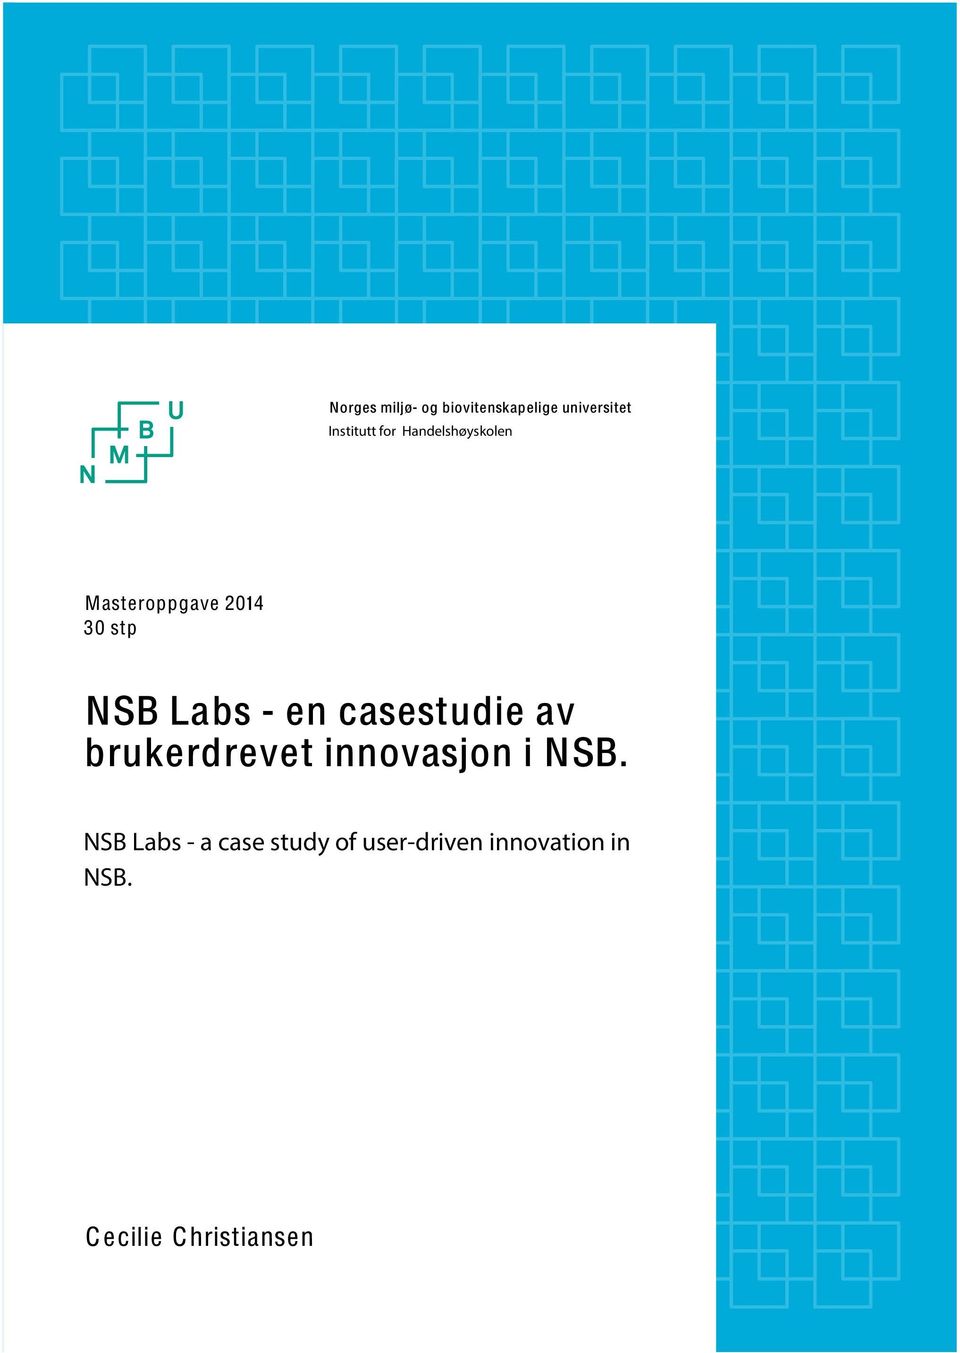 casestudie av brukerdrevet innovasjon i NSB.